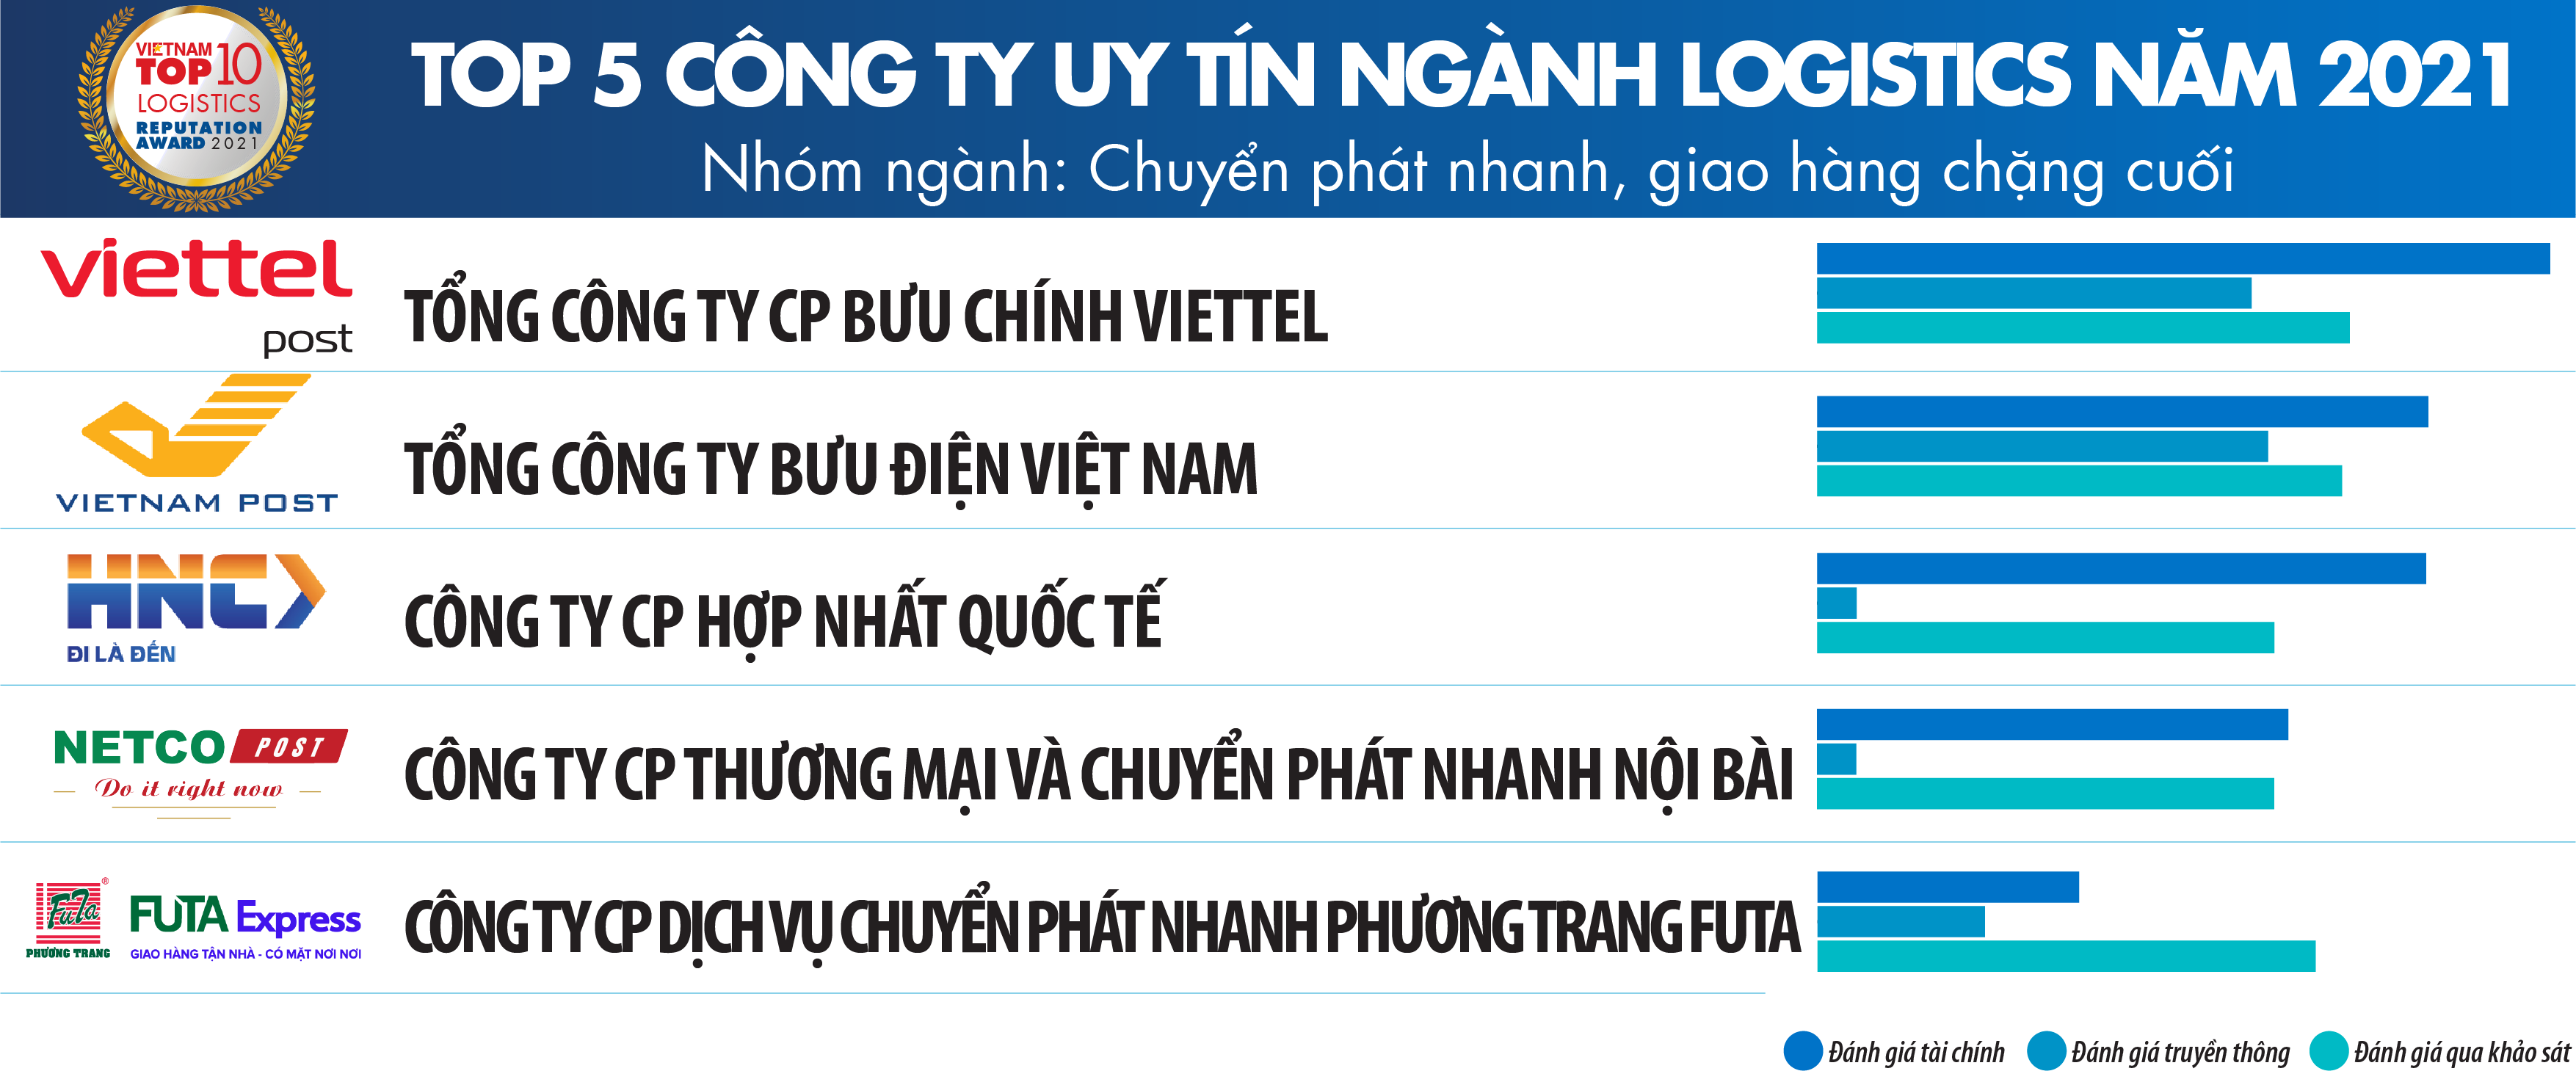 Top List logistics companies in Vietnam in 2021 ALS